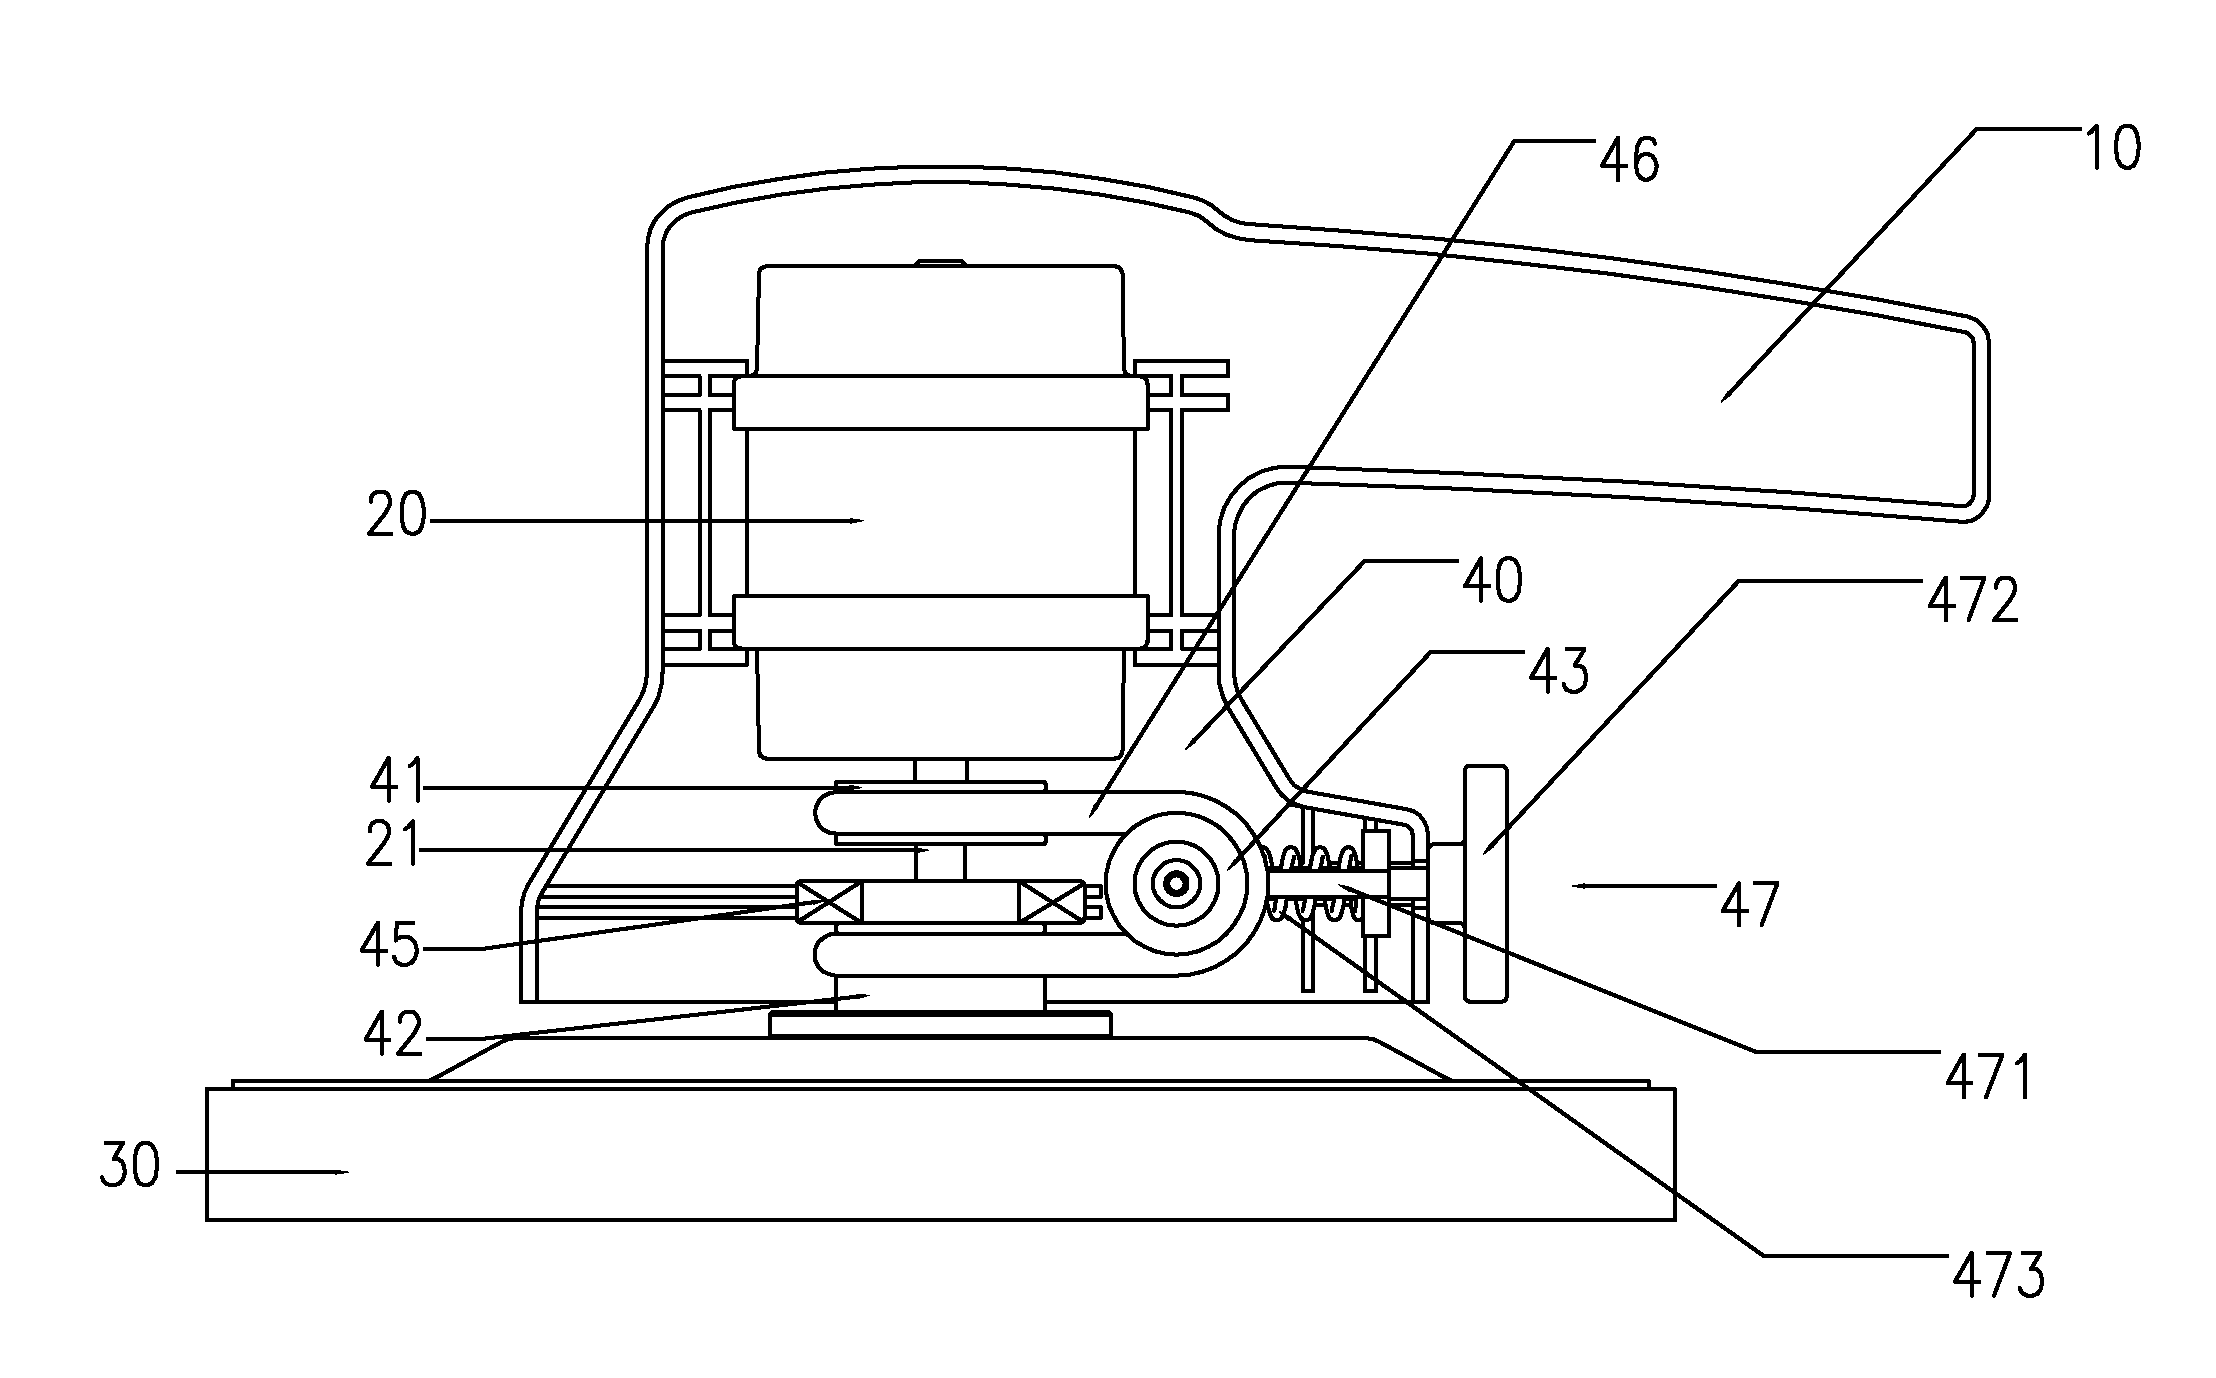 Counter-rotating polisher